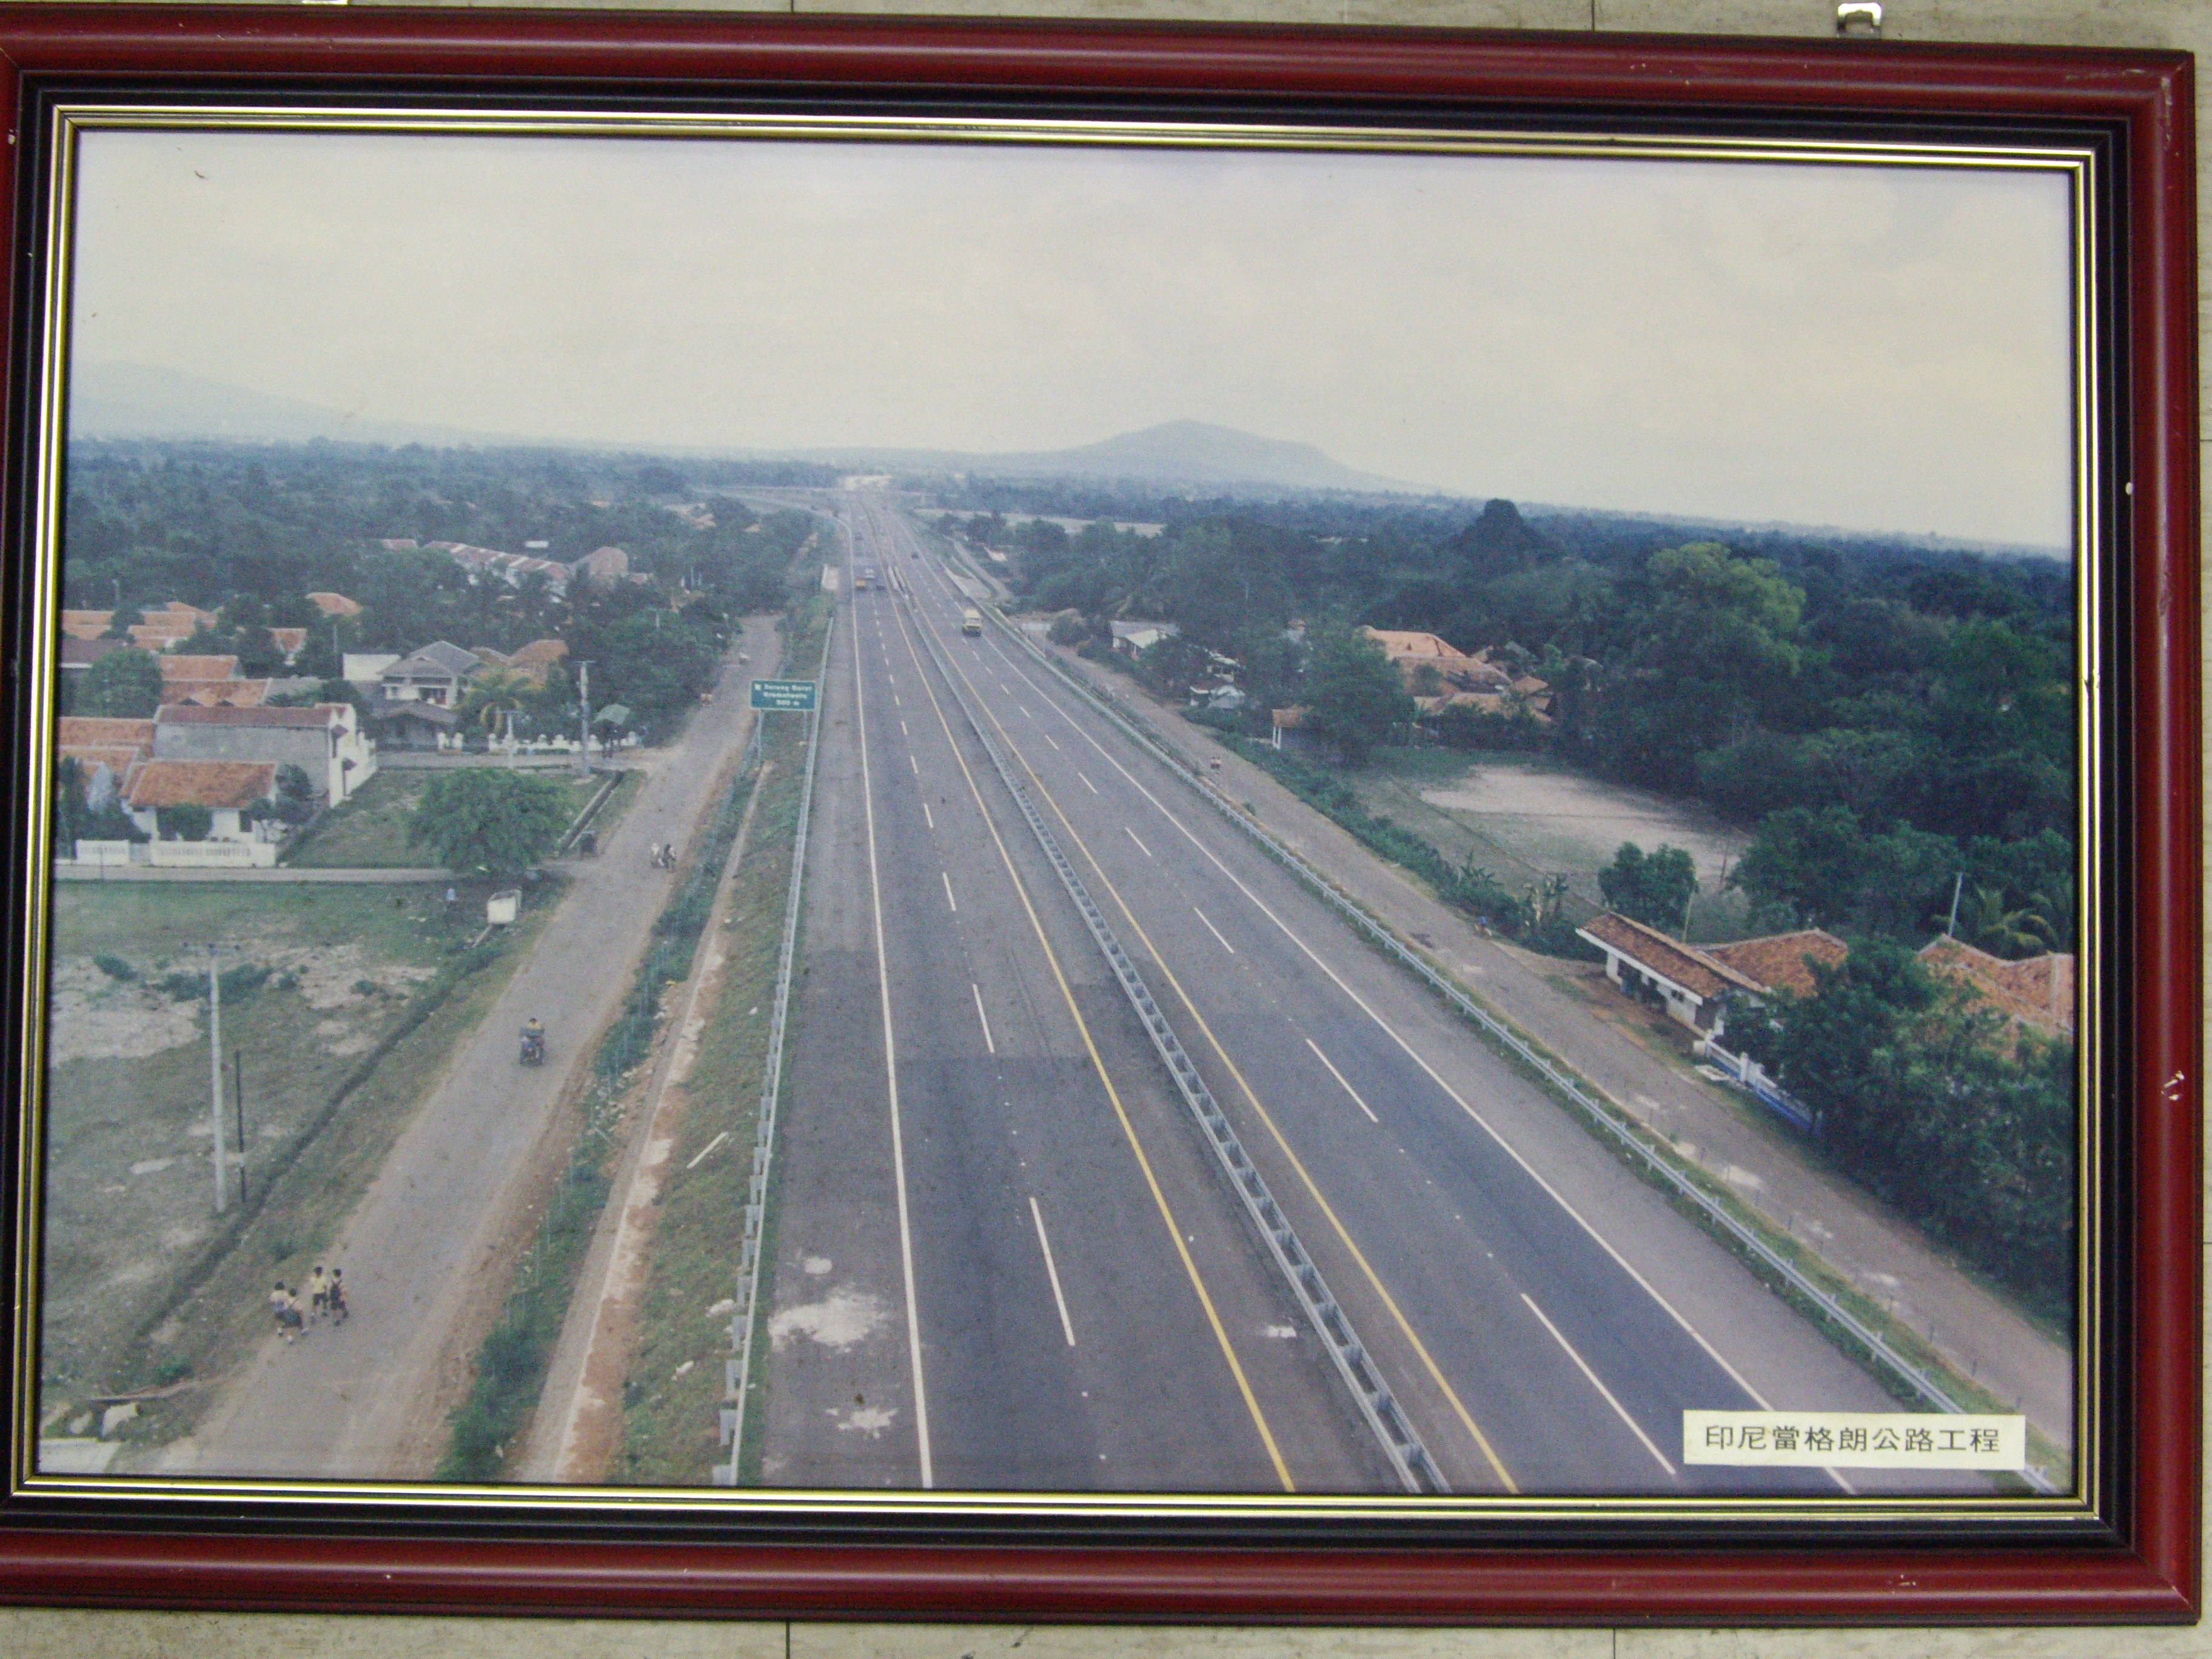 印尼當格朗公路工程(裱框照)